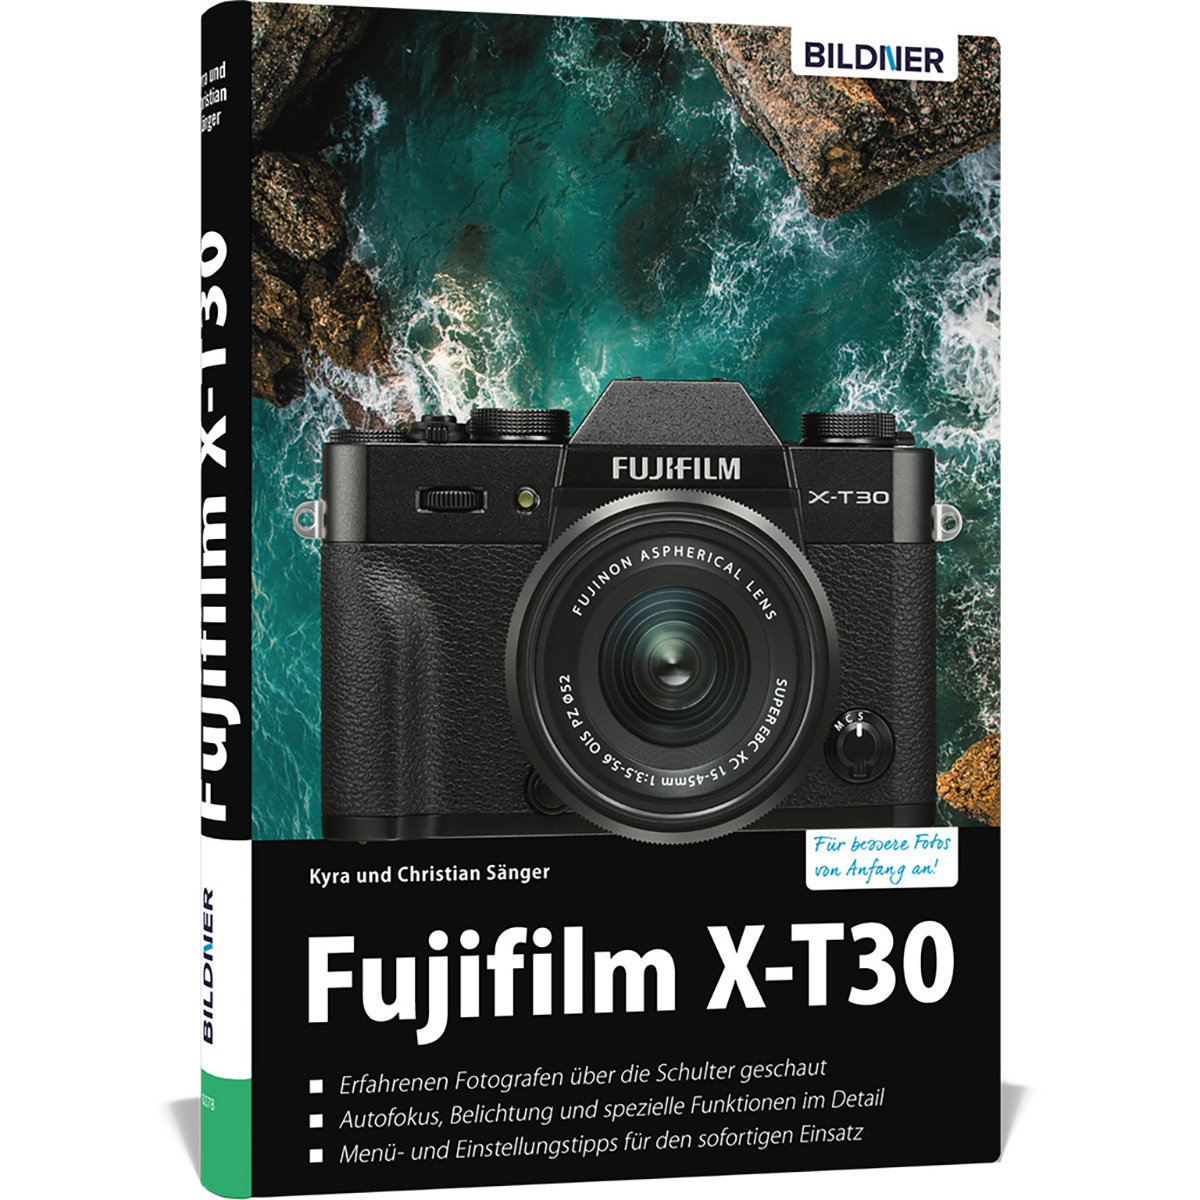 Kamera! - Praxisbuch X-T30 Ihrer Fujifilm Das zu umfangreiche